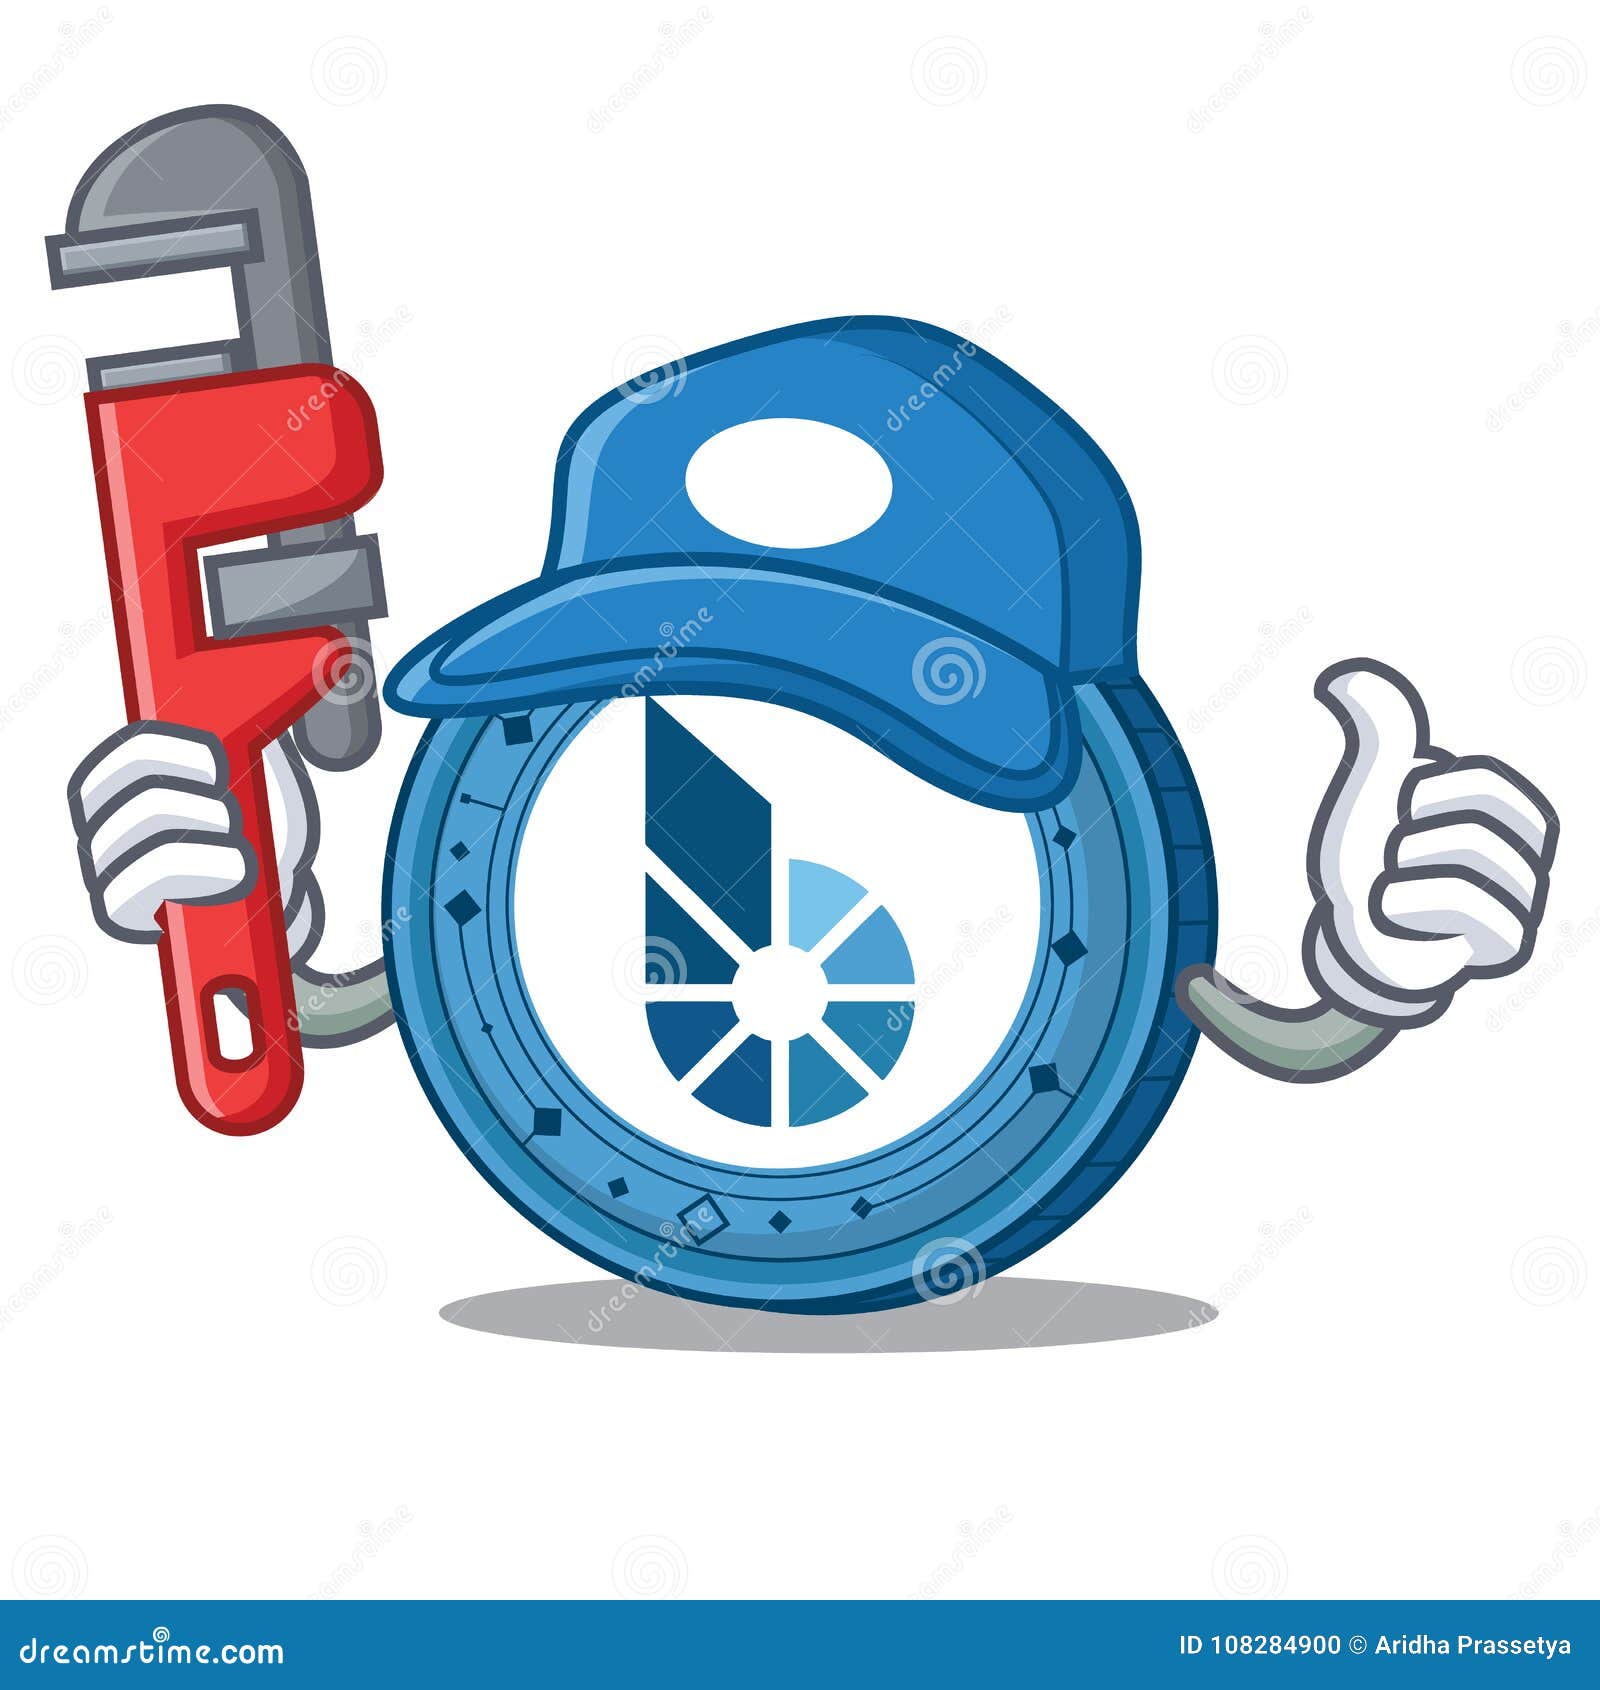 Plumber BitShares Coin Mascot Cartoon Stock Vector ...